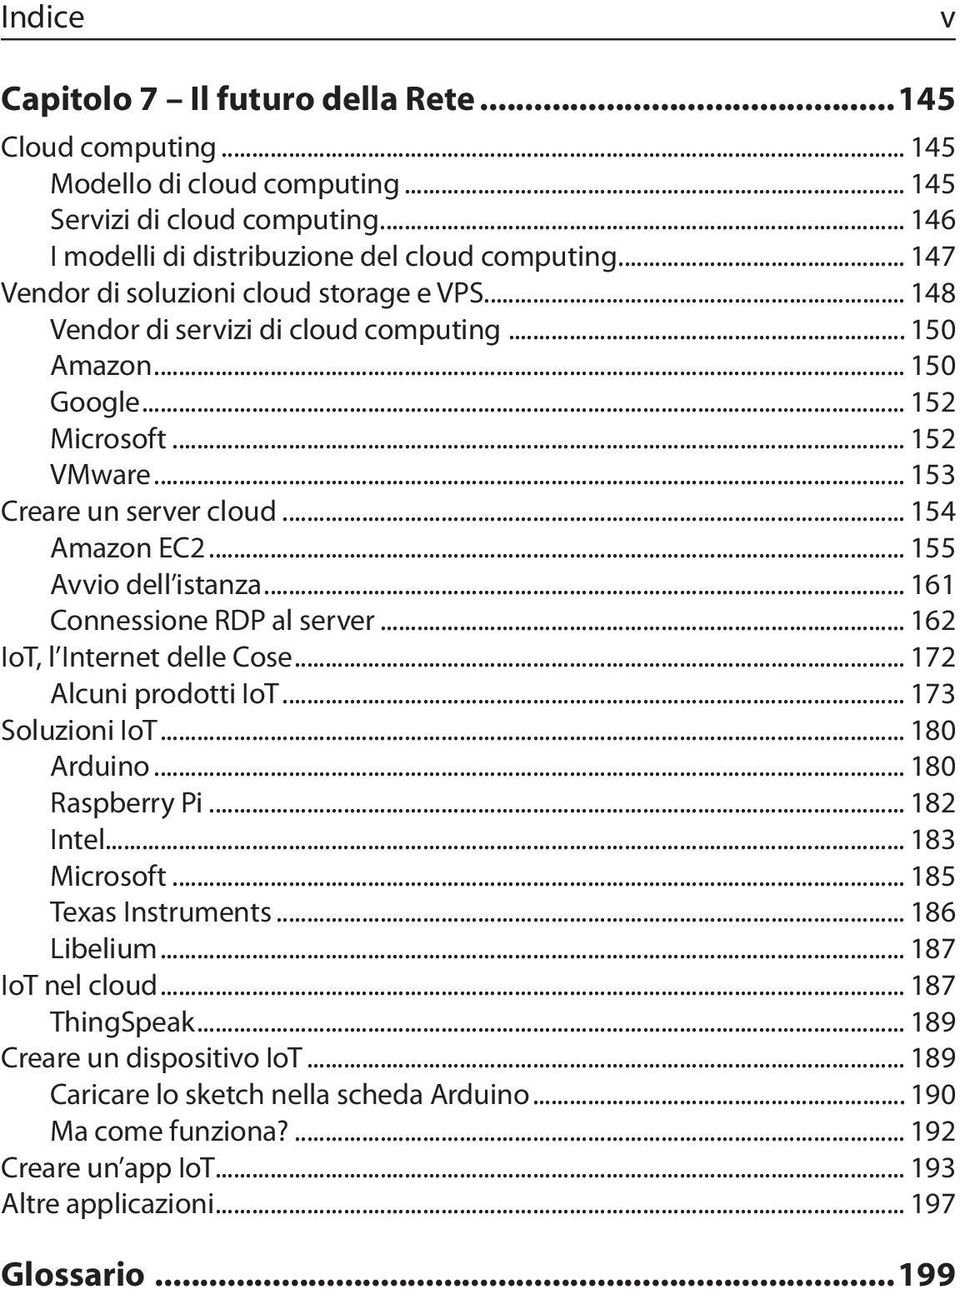 .. 155 Avvio dell istanza... 161 Connessione RDP al server... 162 IoT, l Internet delle Cose... 172 Alcuni prodotti IoT... 173 Soluzioni IoT... 180 Arduino... 180 Raspberry Pi... 182 Intel.